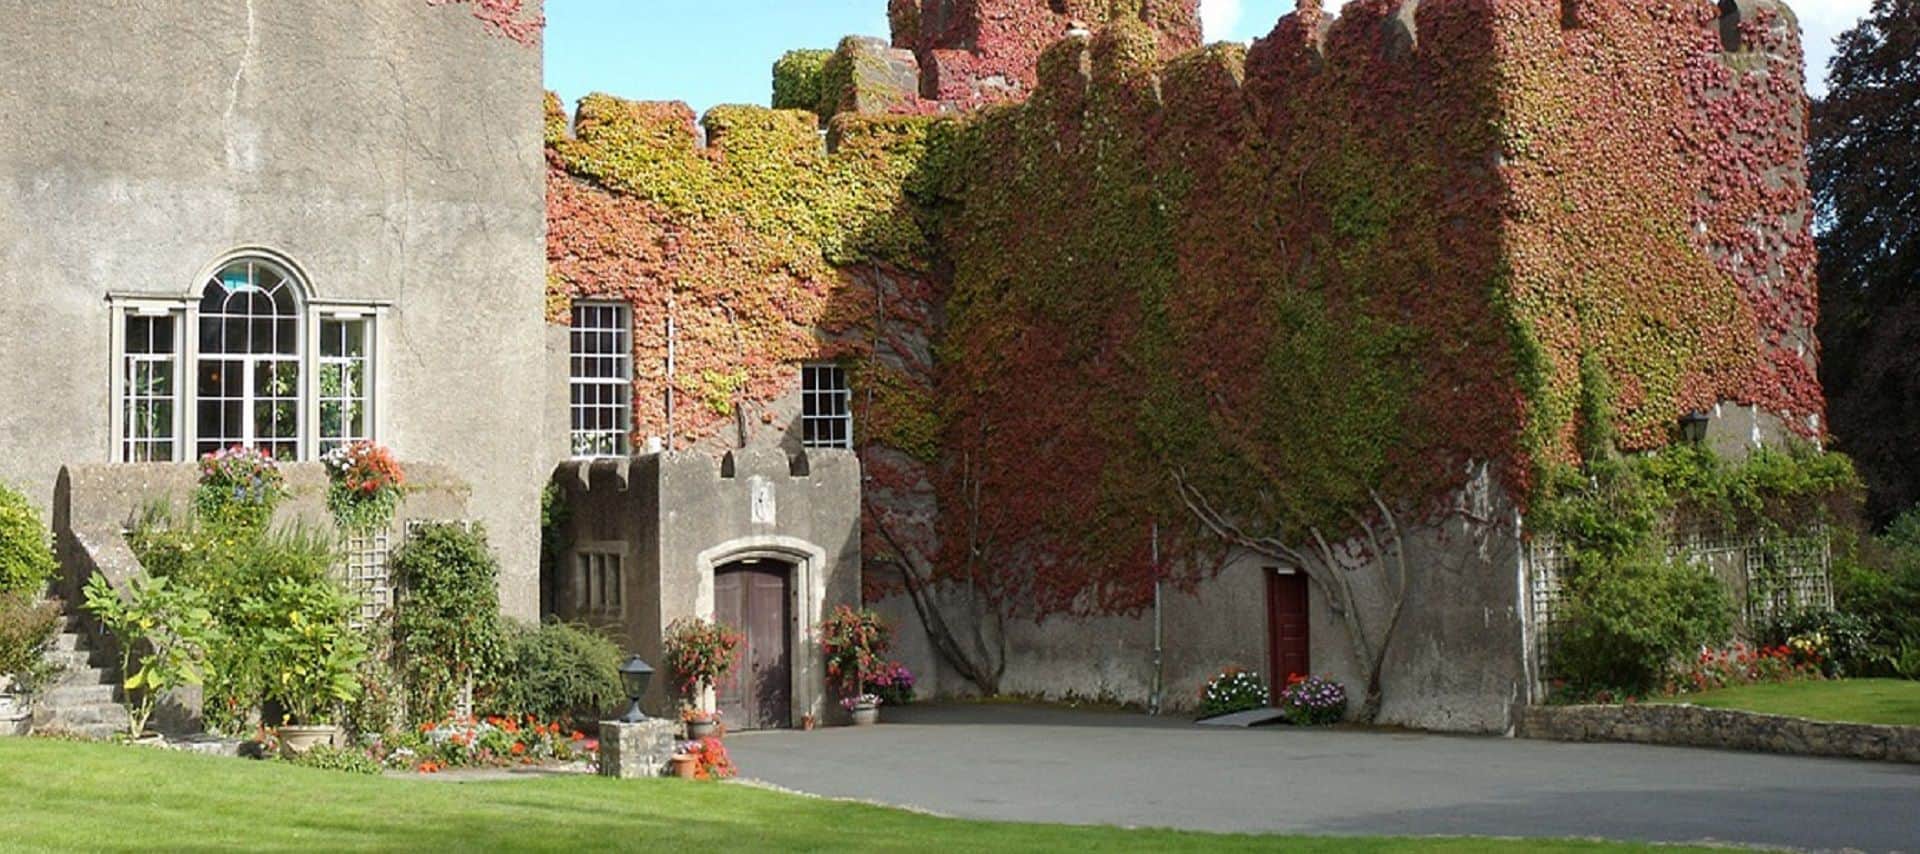 Fonmon Castle in UK